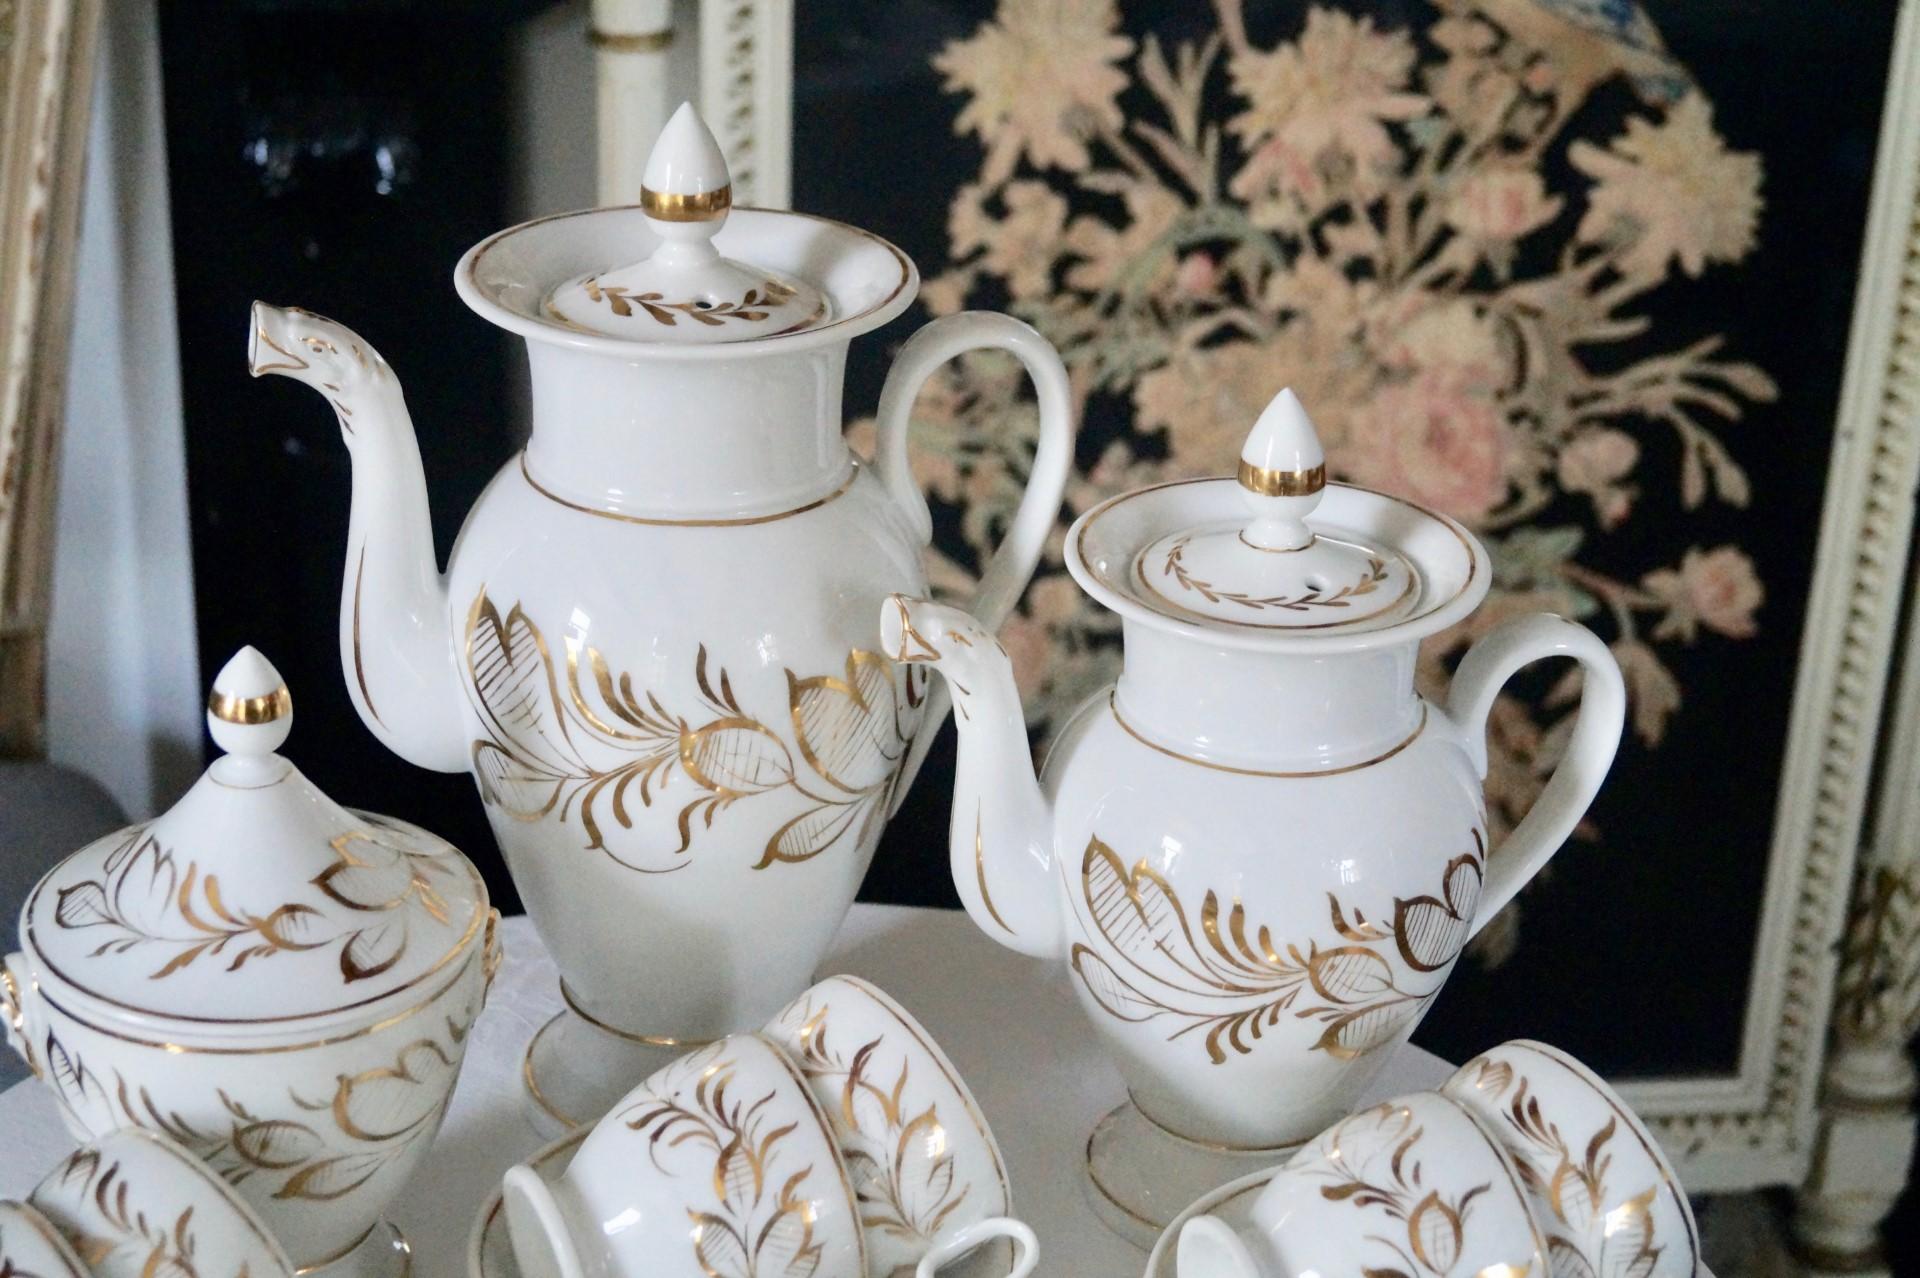 Wunderschönes altes Pariser Porzellan (Porcelaine de Paris) Kaffee- und Teeservice von ca. 1850-1880!

Sehr fein von Hand mit Gold verziert. 

Sehr guter Zustand für sein Alter, einige Gold Verschleiß vorhanden sind. Leider fehlt das